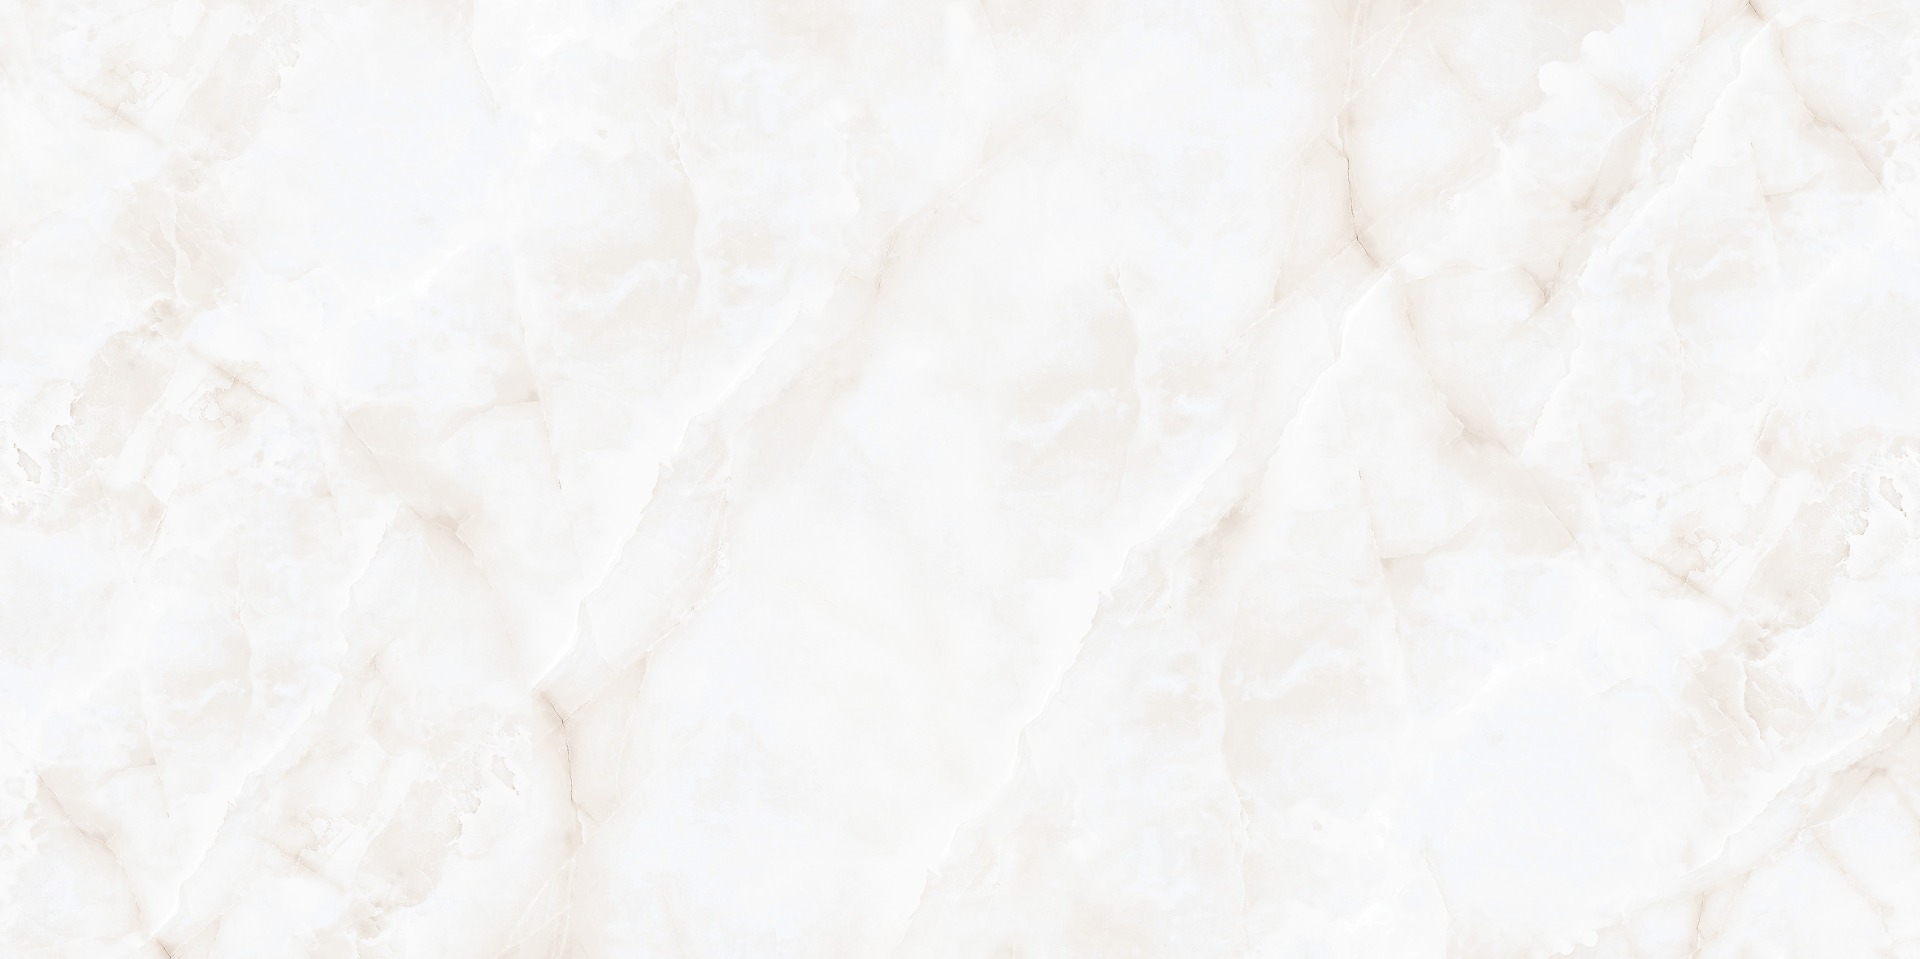 White Marble Tiles for Bathroom Tiles, Living Room Tiles, Bedroom Tiles, Accent Tiles, Hospital Tiles, High Traffic Tiles, Bar/Restaurant, Commercial/Office, Outdoor Area